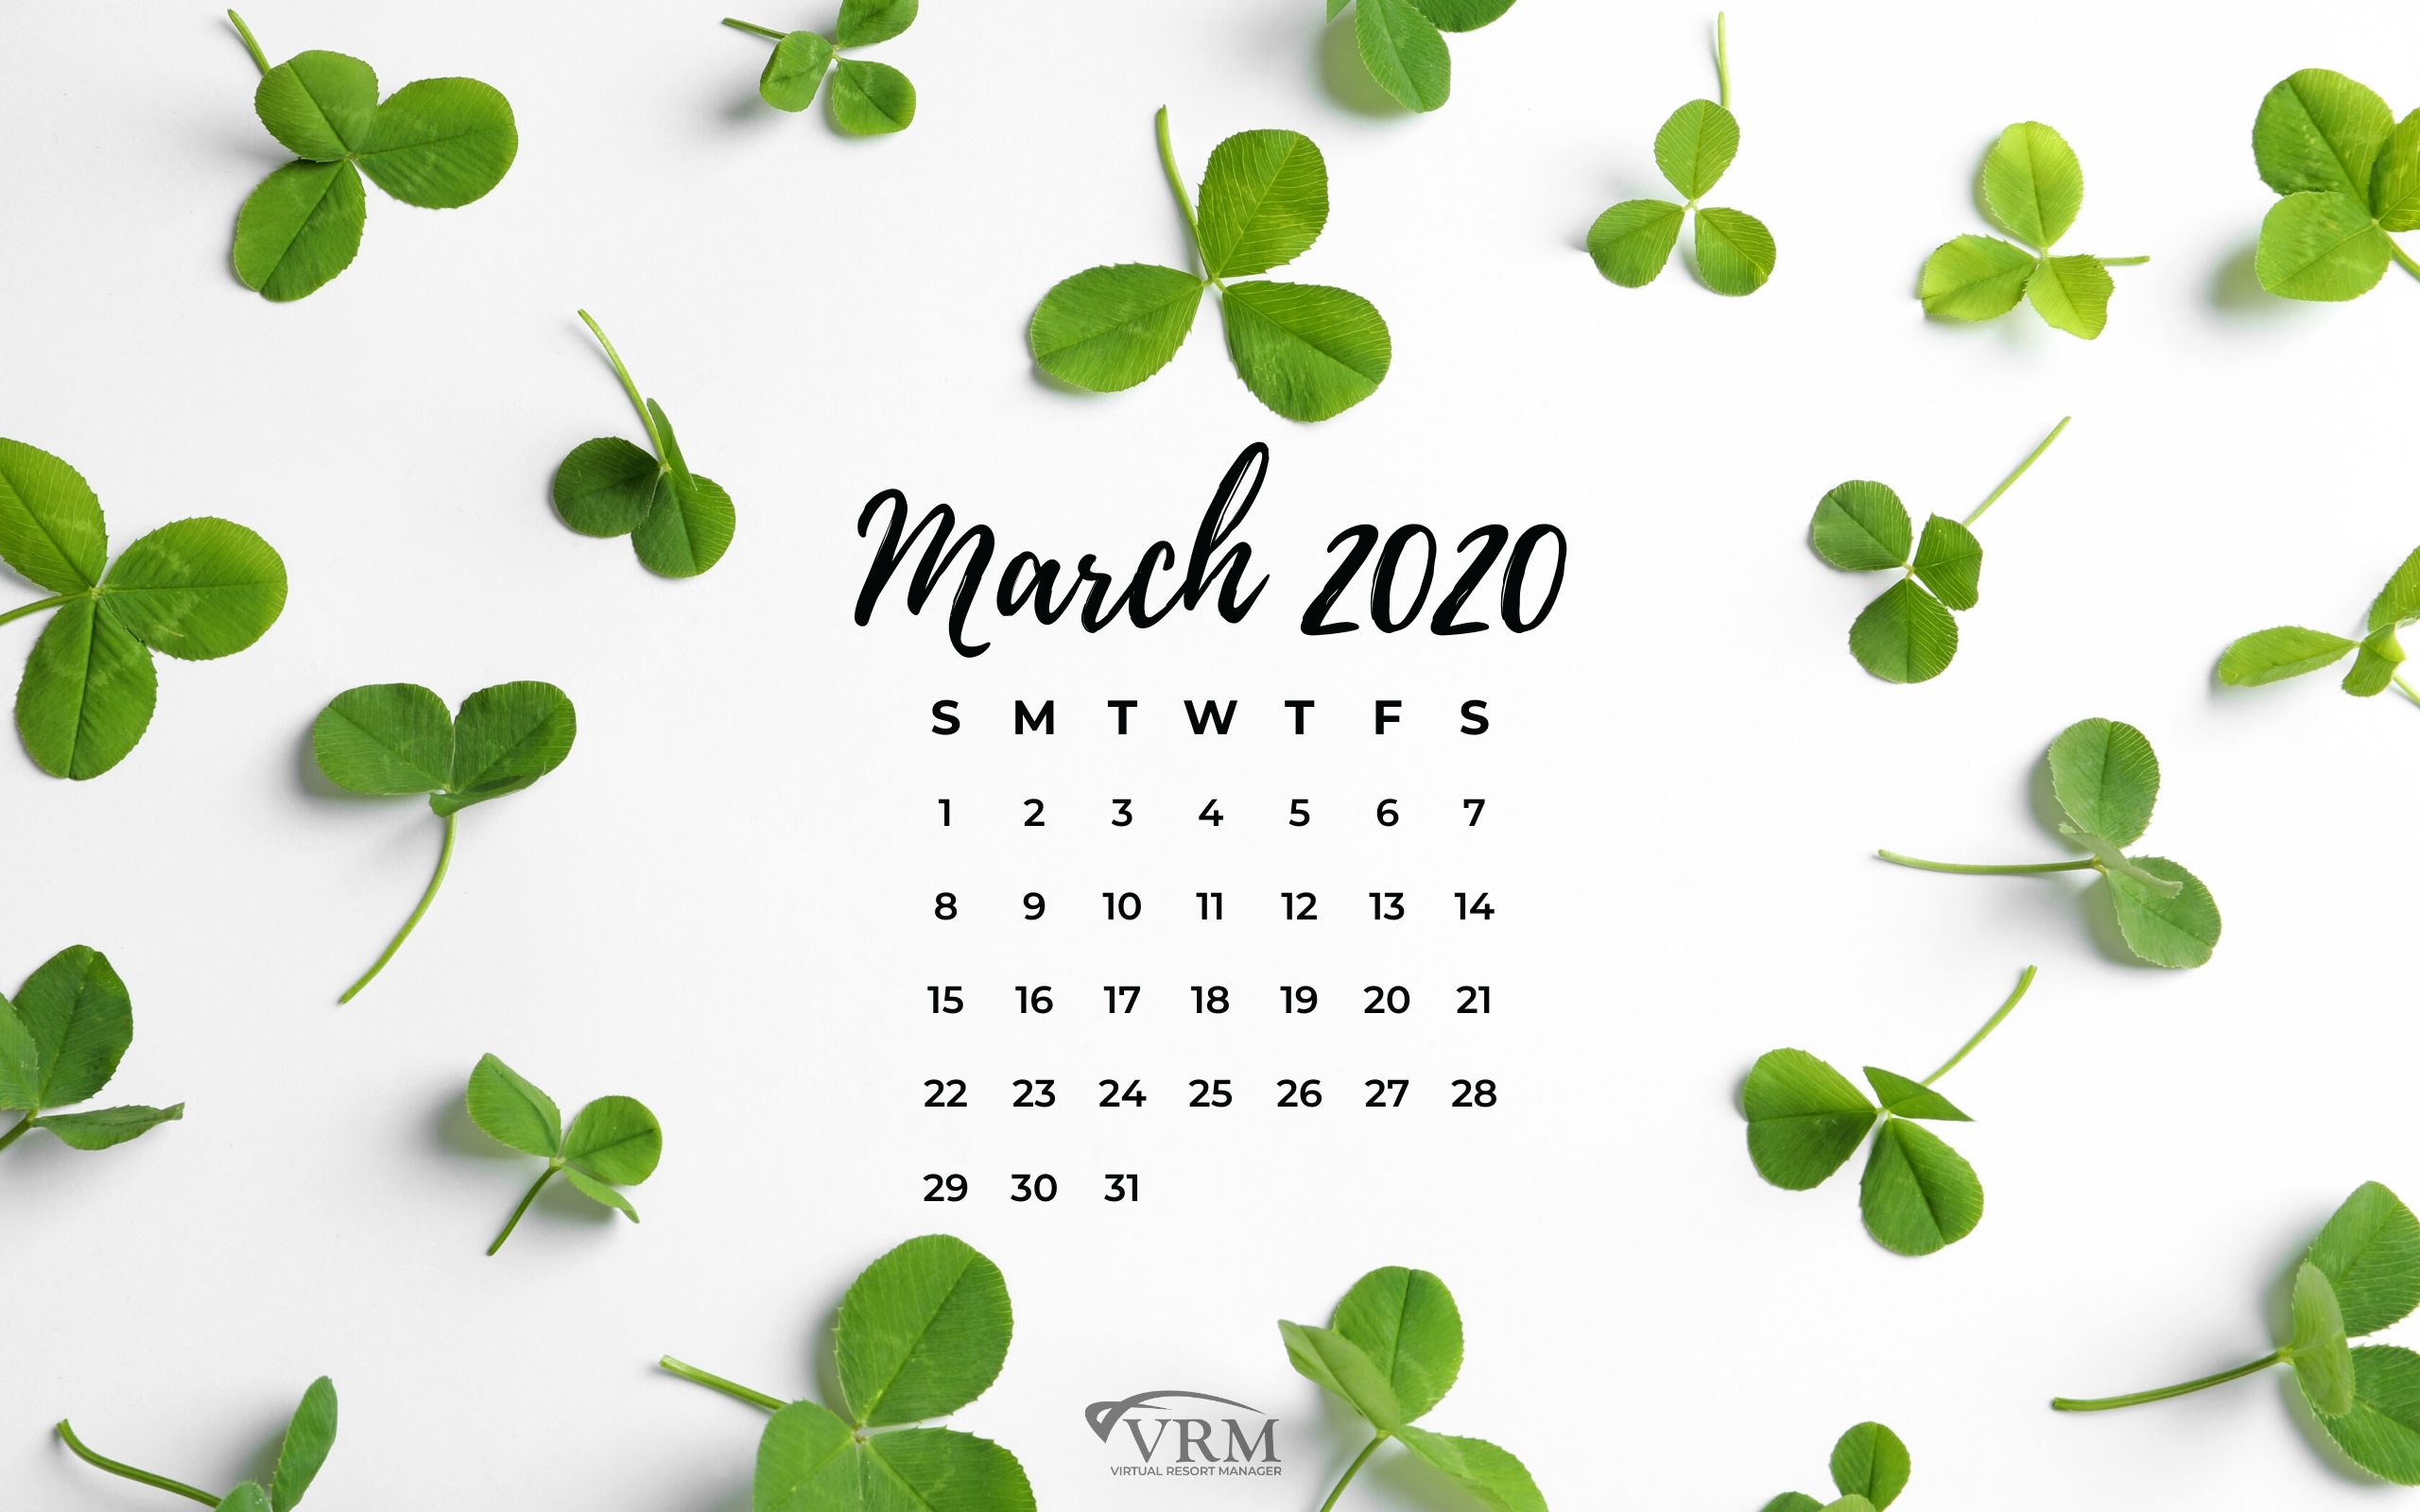 Kế hoạch tiếp thị tháng 3 cho năm 2022 sẽ giúp bạn tăng doanh số bán hàng của mình. Được thiết kế để giúp các doanh nghiệp giải quyết những thách thức tiếp thị mùa xuân và đưa ra chiến lược tối ưu hóa thu nhập. Tải ngay kế hoạch tiếp thị cho tháng Ba và hướng đến thành công trong sống và kinh doanh.